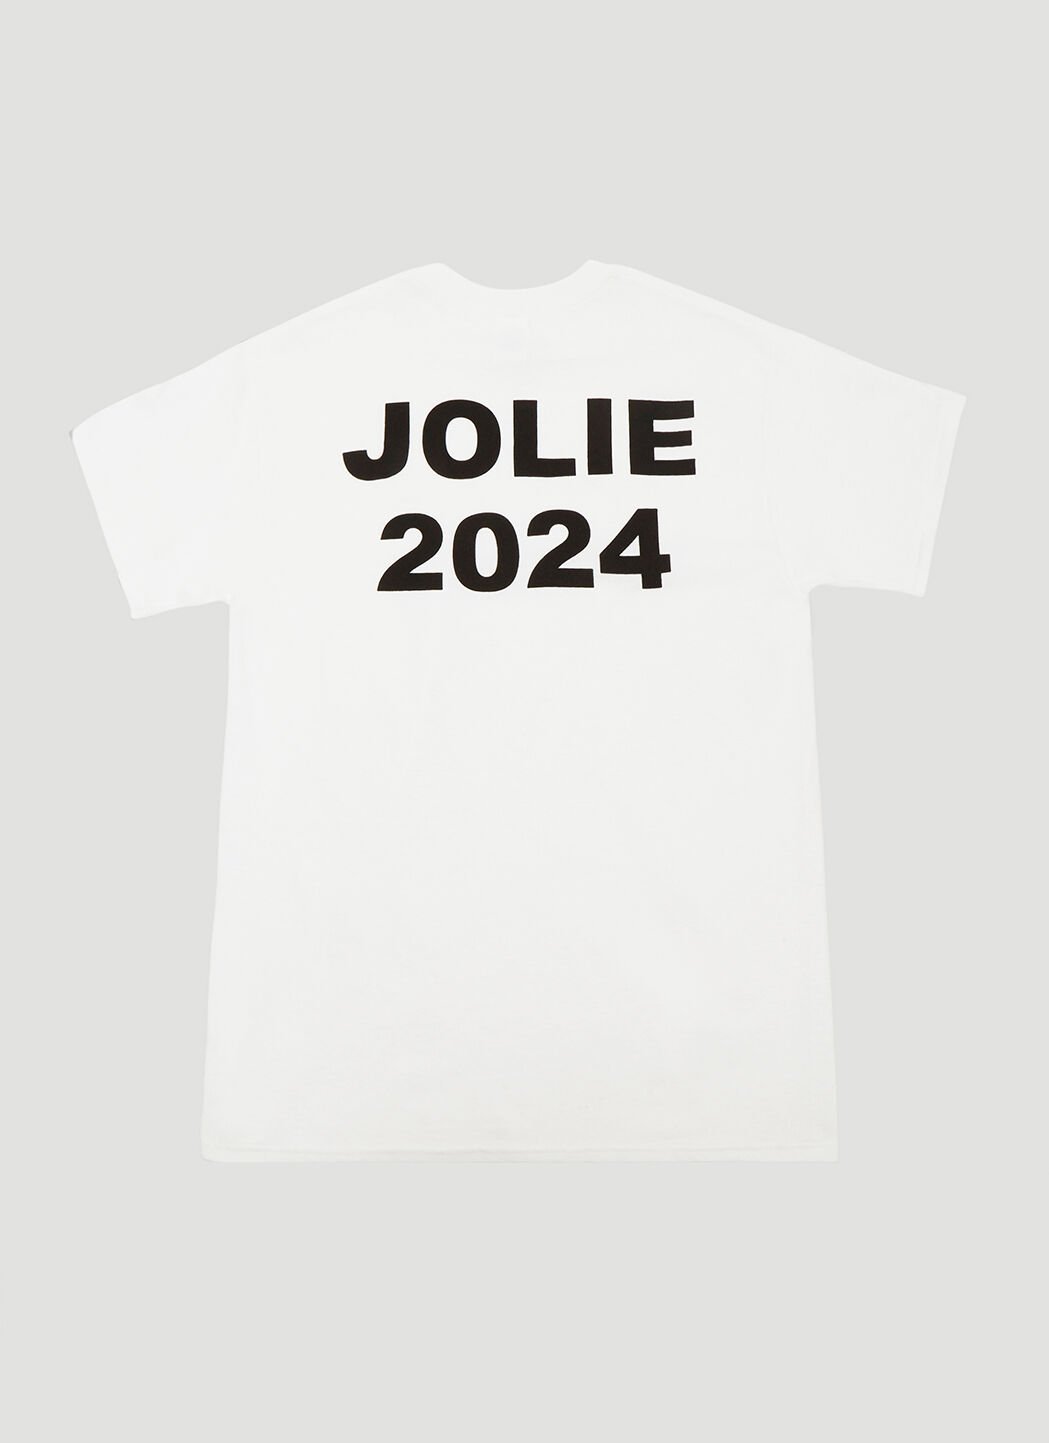 Saint Laurent Article 1 Jolie 2024 T-Shirt Black sla0136039